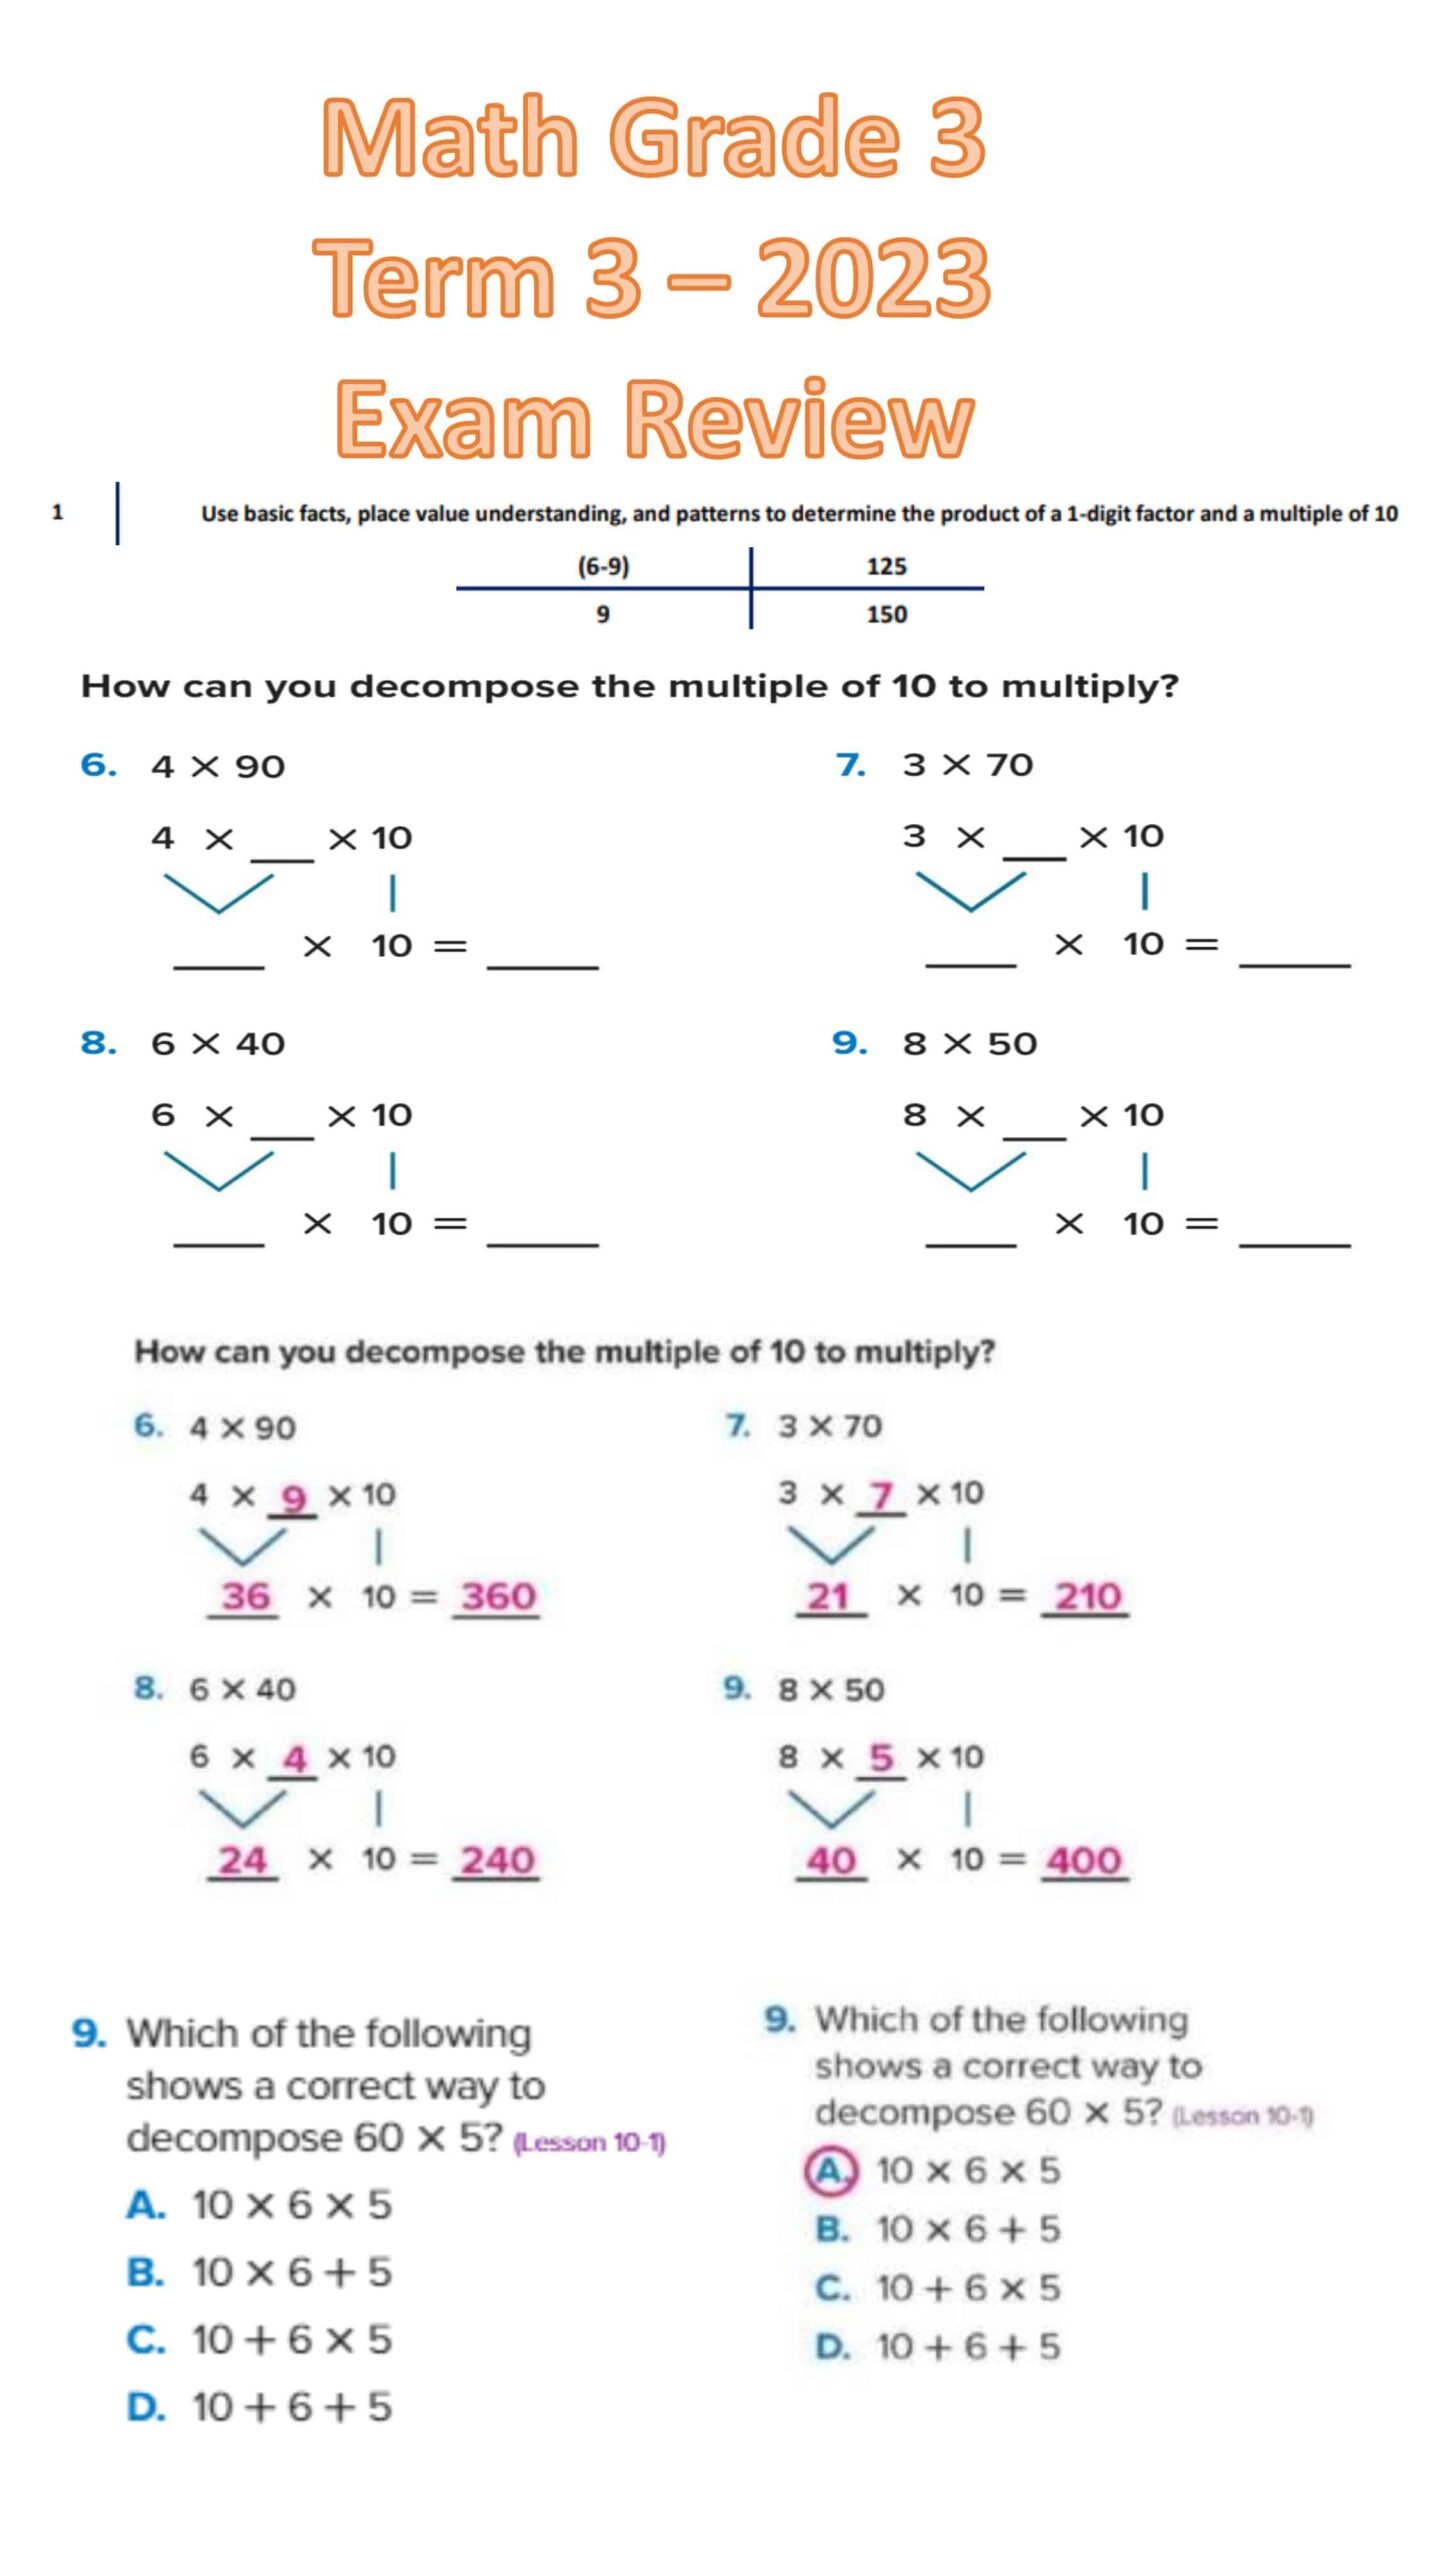 حل أوراق عمل أسئلة هيكلة امتحان الرياضيات المتكاملة الصف الثالث Reveal